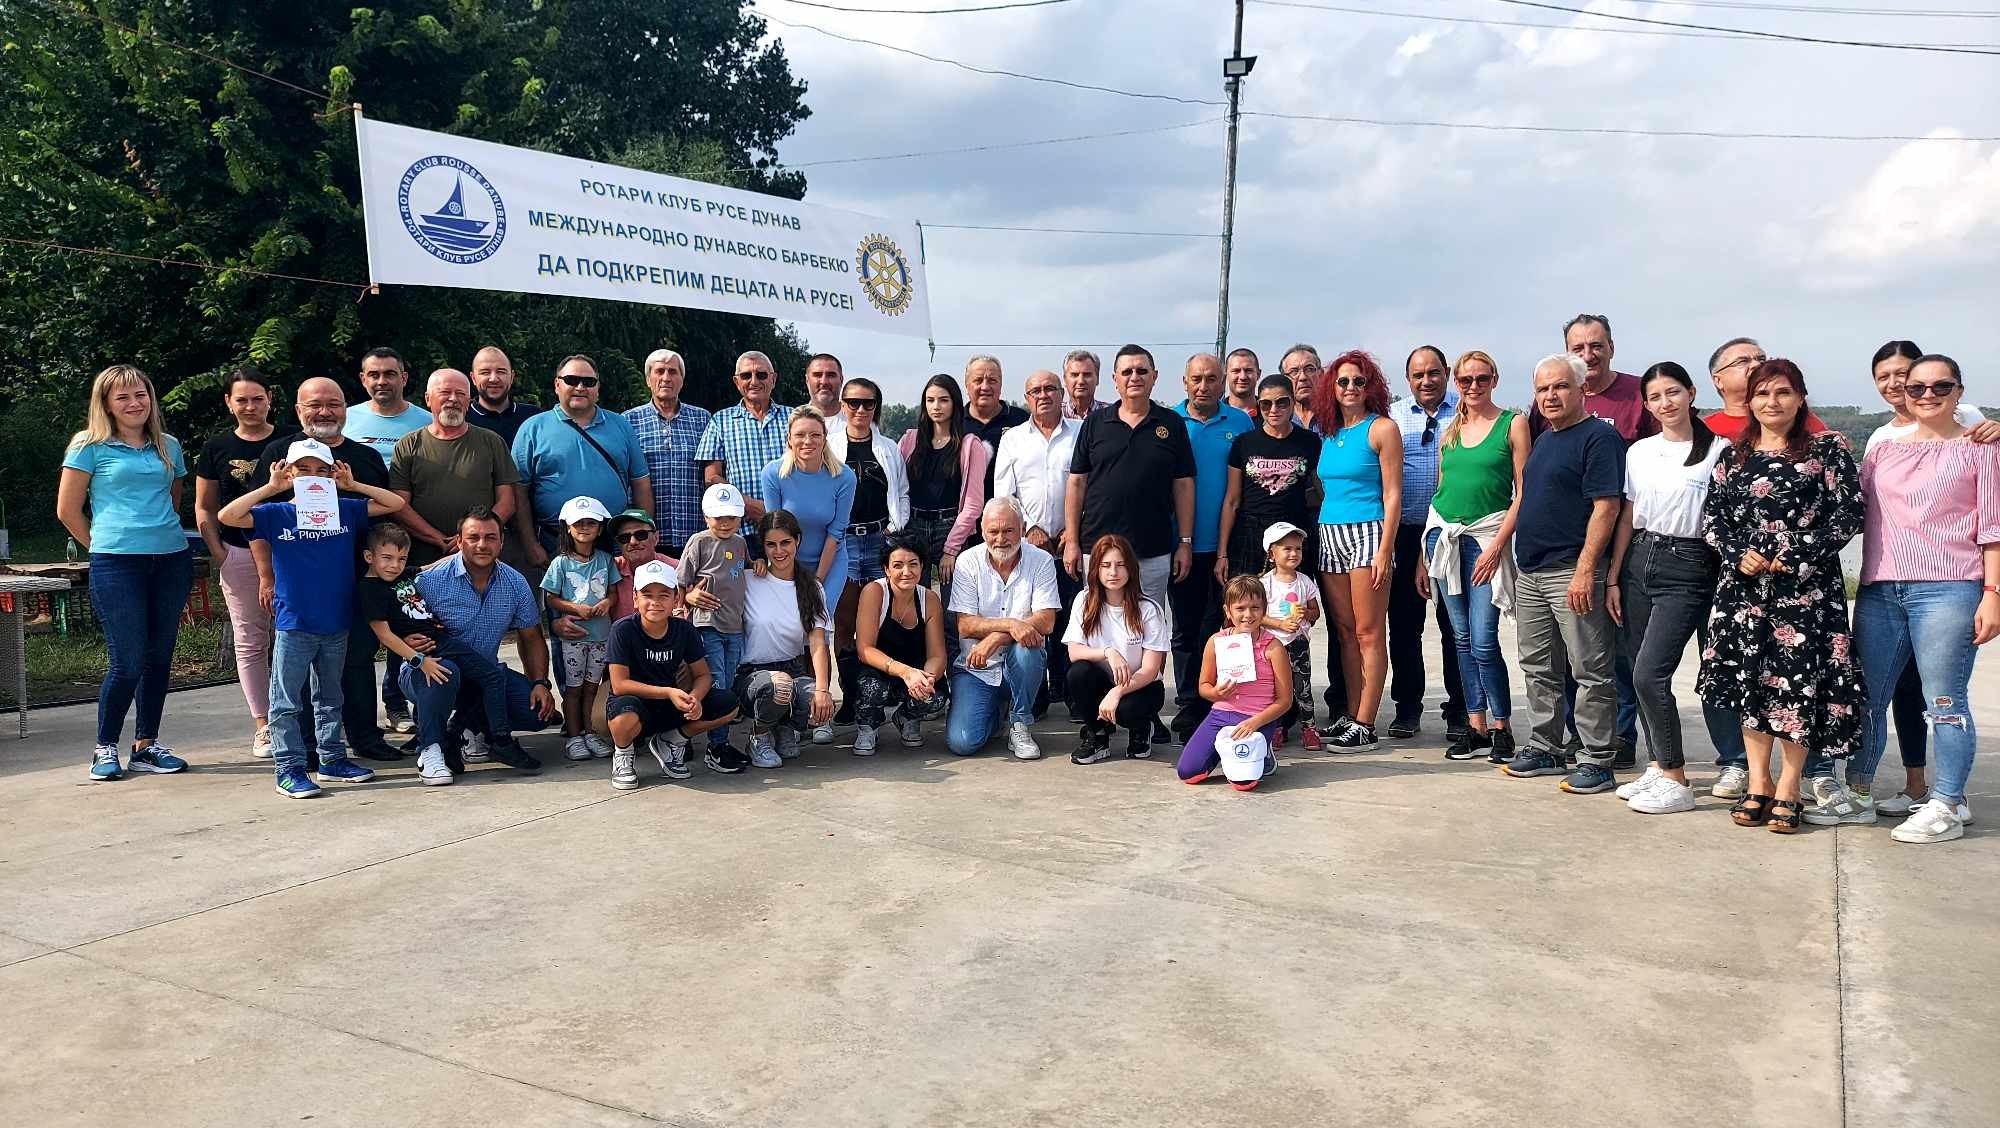   Над 5000 лева събраха на 11-то международно Дунавско барбекю в Ряхово Ротари клуб “Русе- Дунав” и техните гости